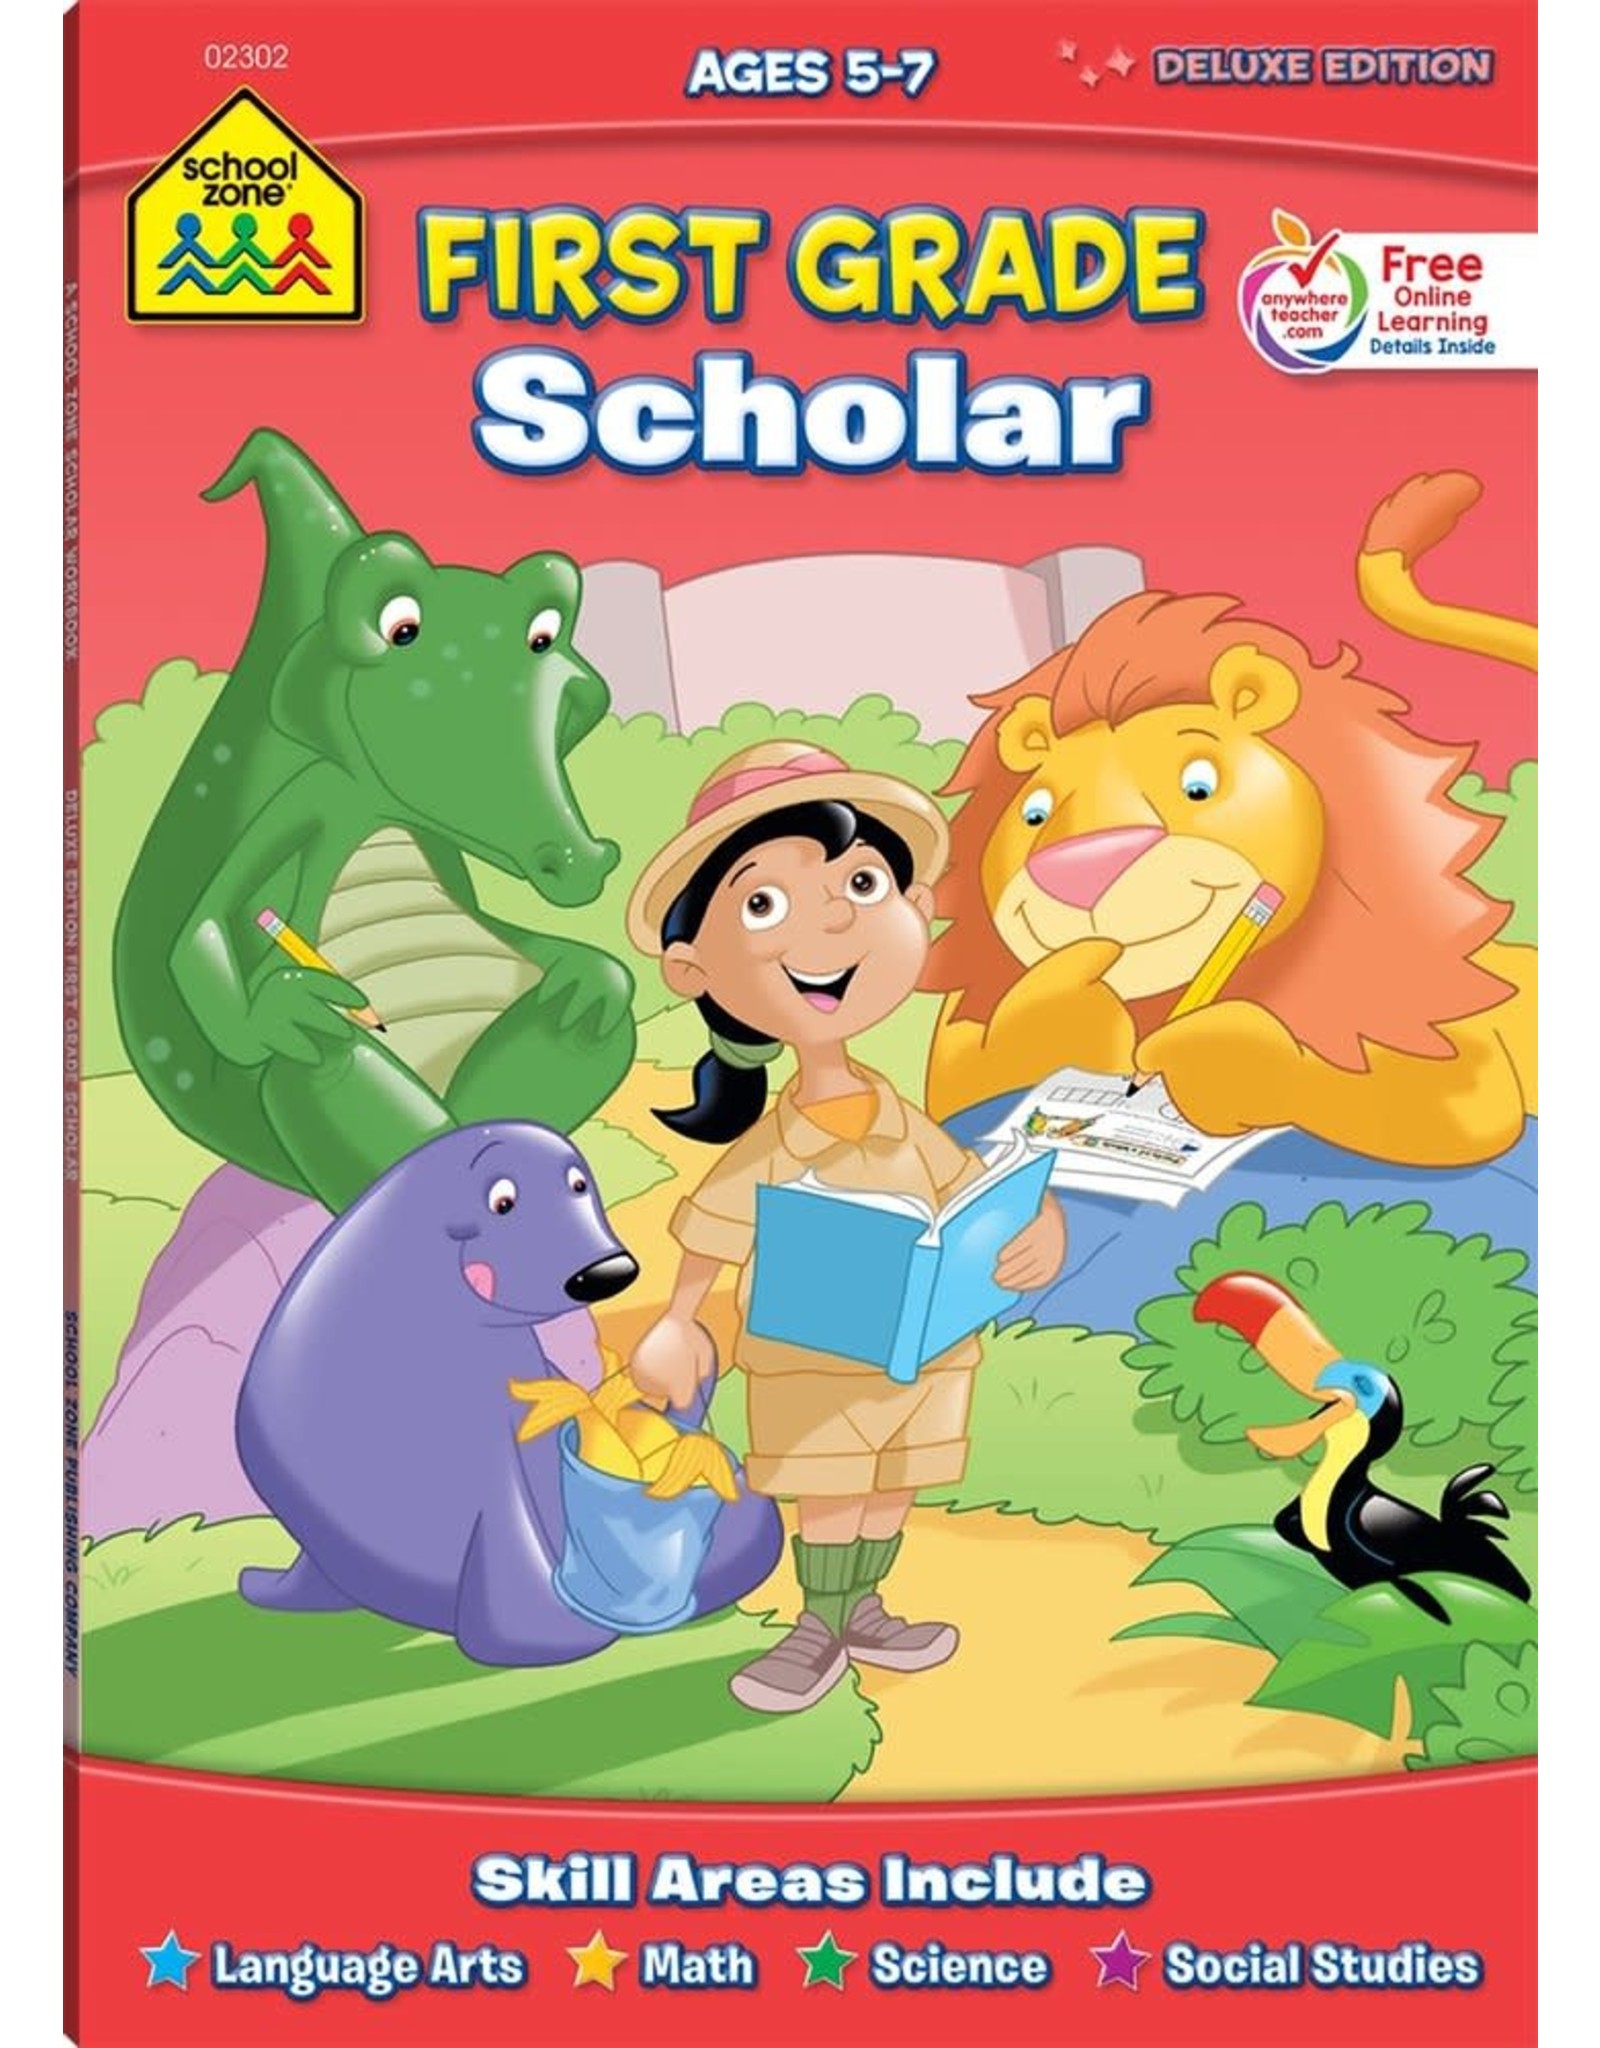 First Grade Scholar